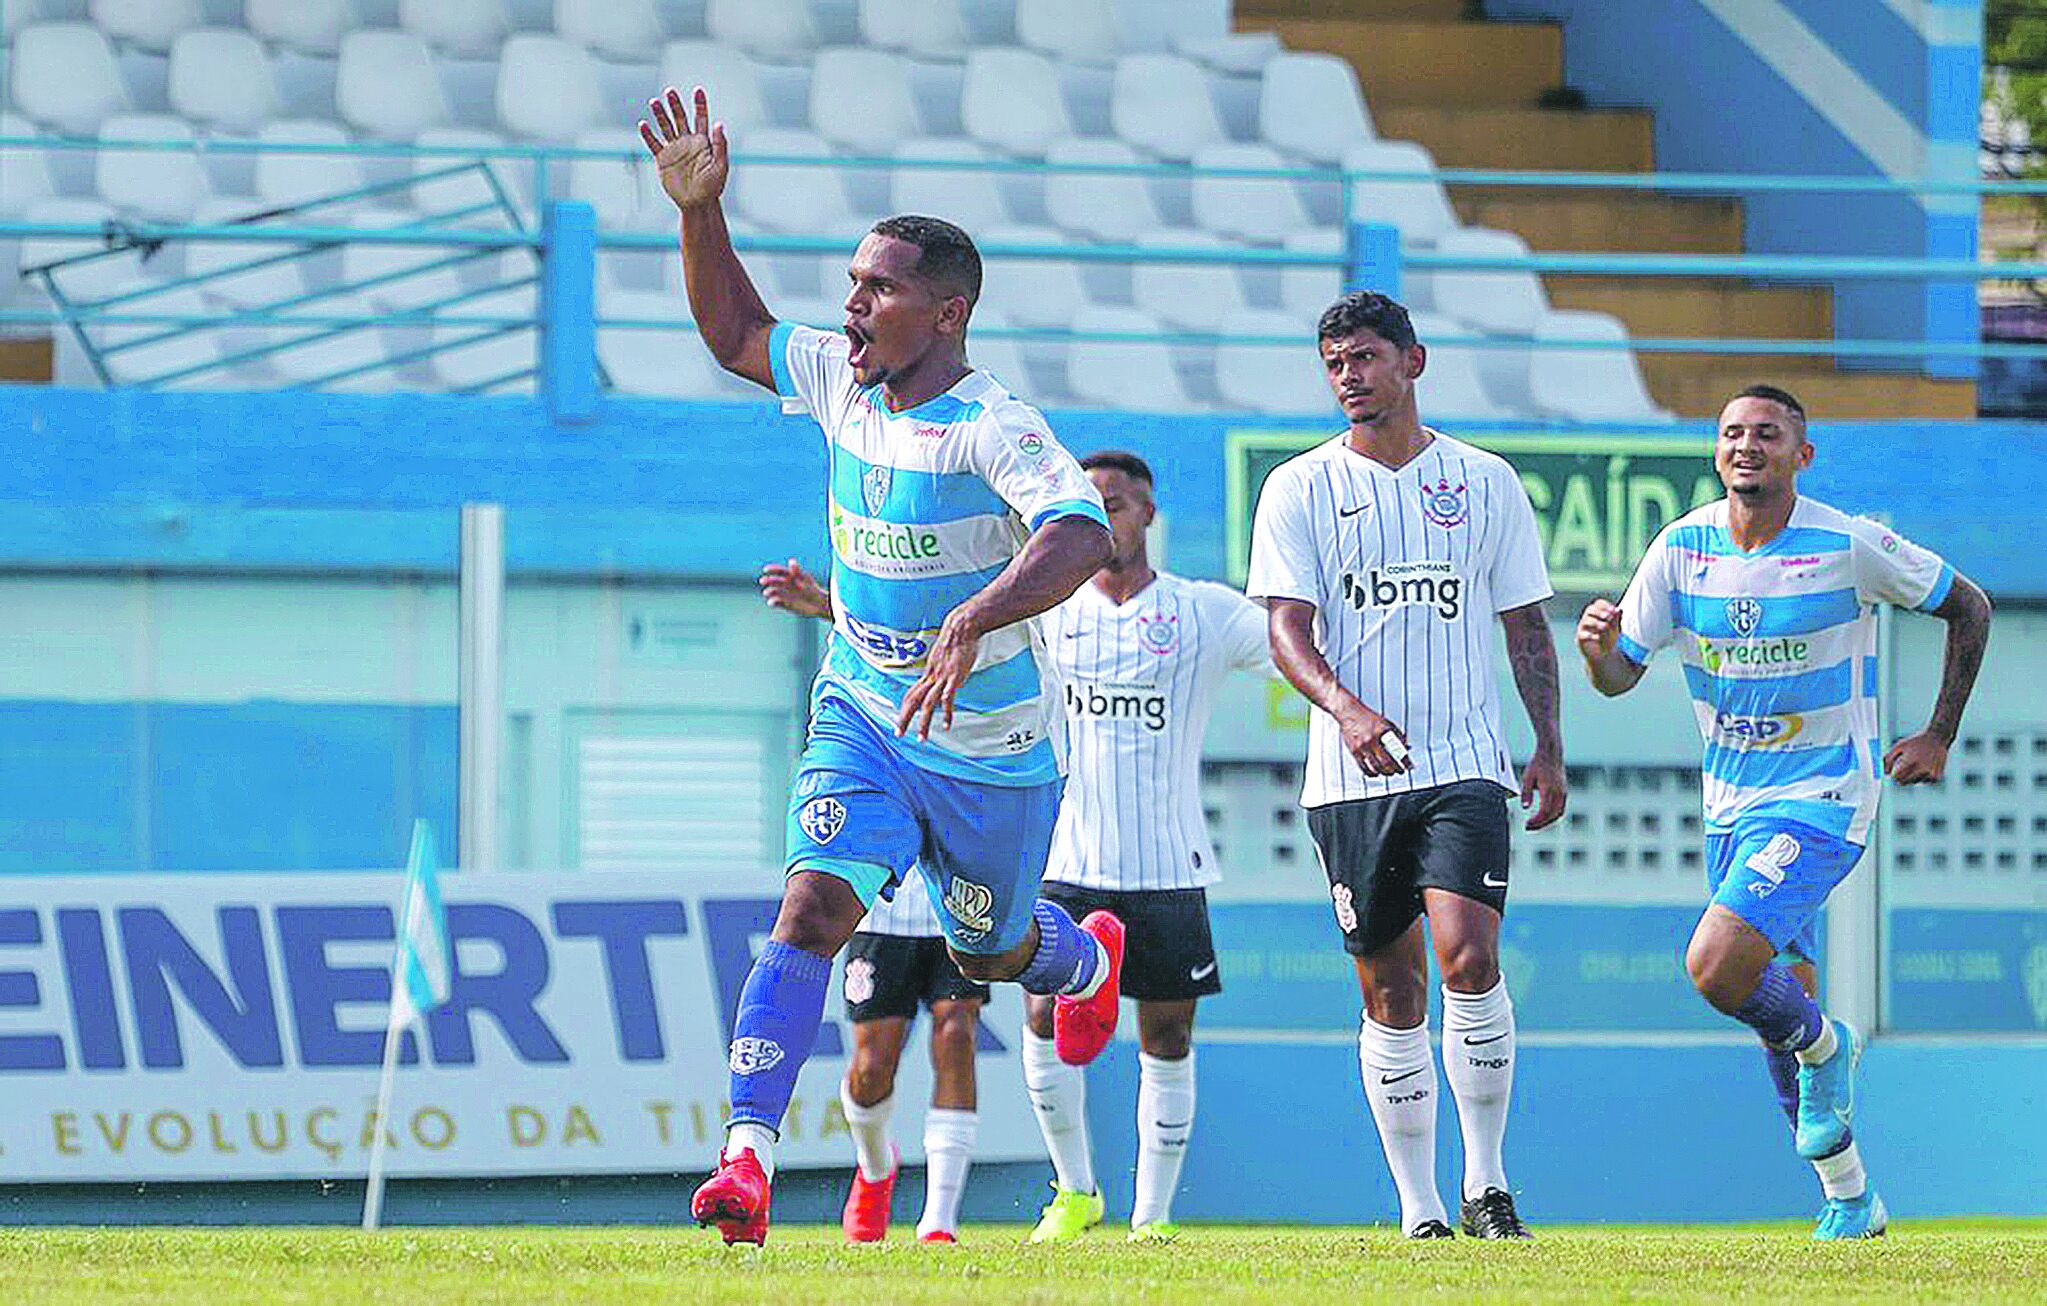 O atacante Debu, em ação contra o Corinthians, pelo Brasileiro de Aspirantes

